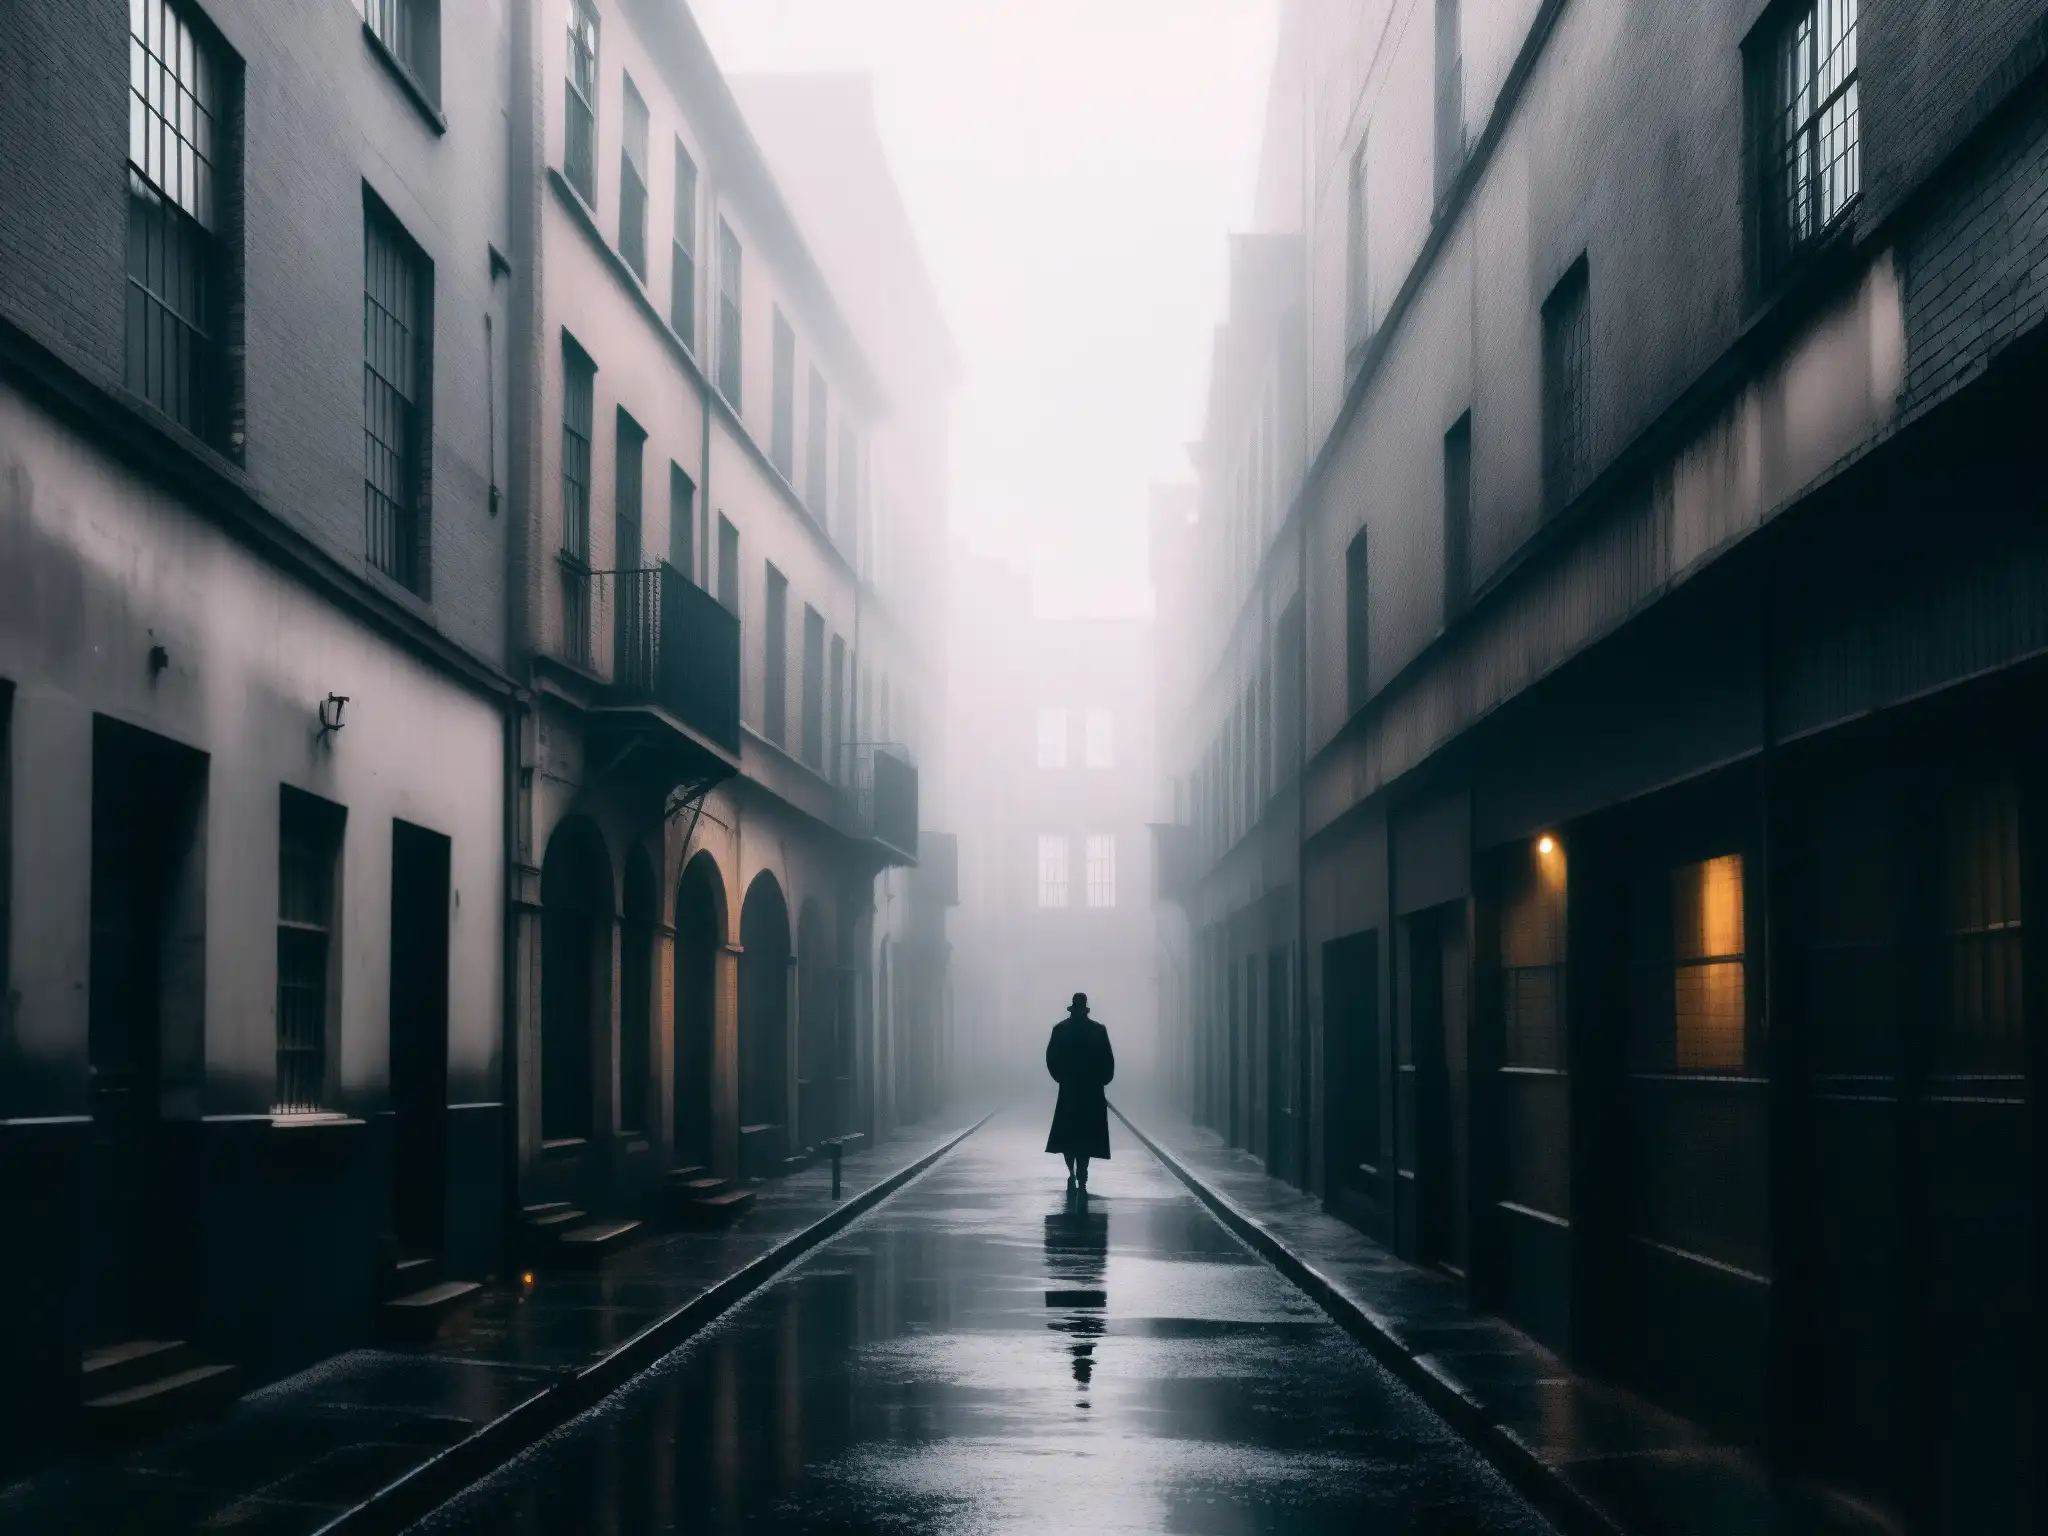 Un callejón sombrío y desolado, envuelto en neblina, muestra la silueta de una figura solitaria